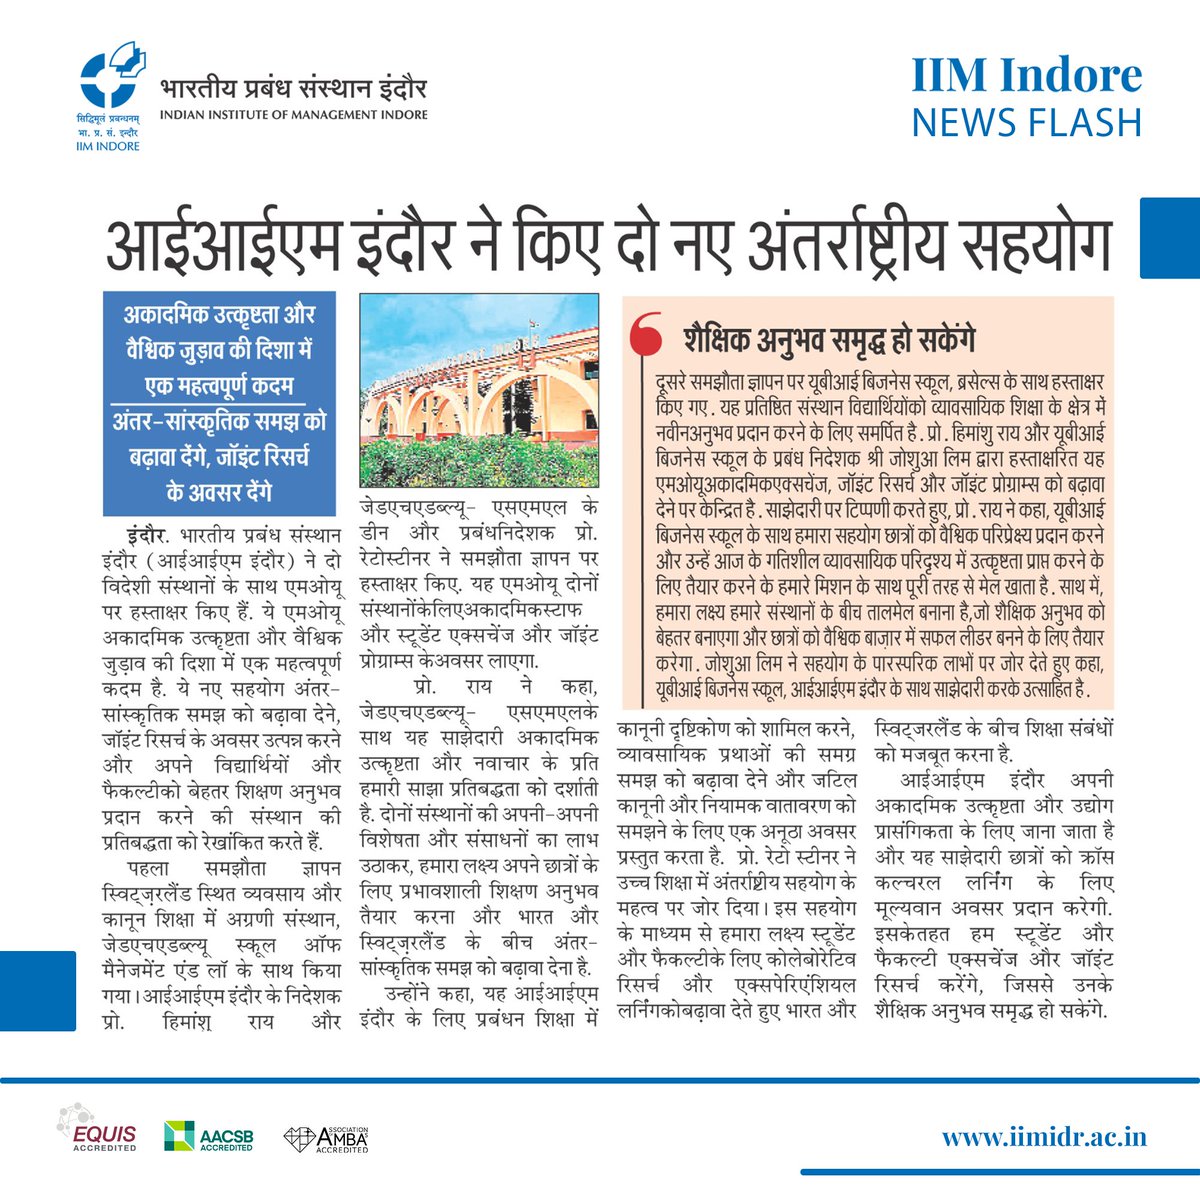 #IIMIndore ने किए दो नए अंतर्राष्ट्रीय सहयोग- पहला समझौता ज्ञापन स्विट्ज़रलैंड स्थित व्यवसाय और कानून शिक्षा में अग्रणी संस्थान, ZHAW School of Management and Law के साथ, दूसरा समझौता @UBI_School के साथ. #Education #India #Belgium #Switzerland @askhimanshurai @EduMinOfIndia